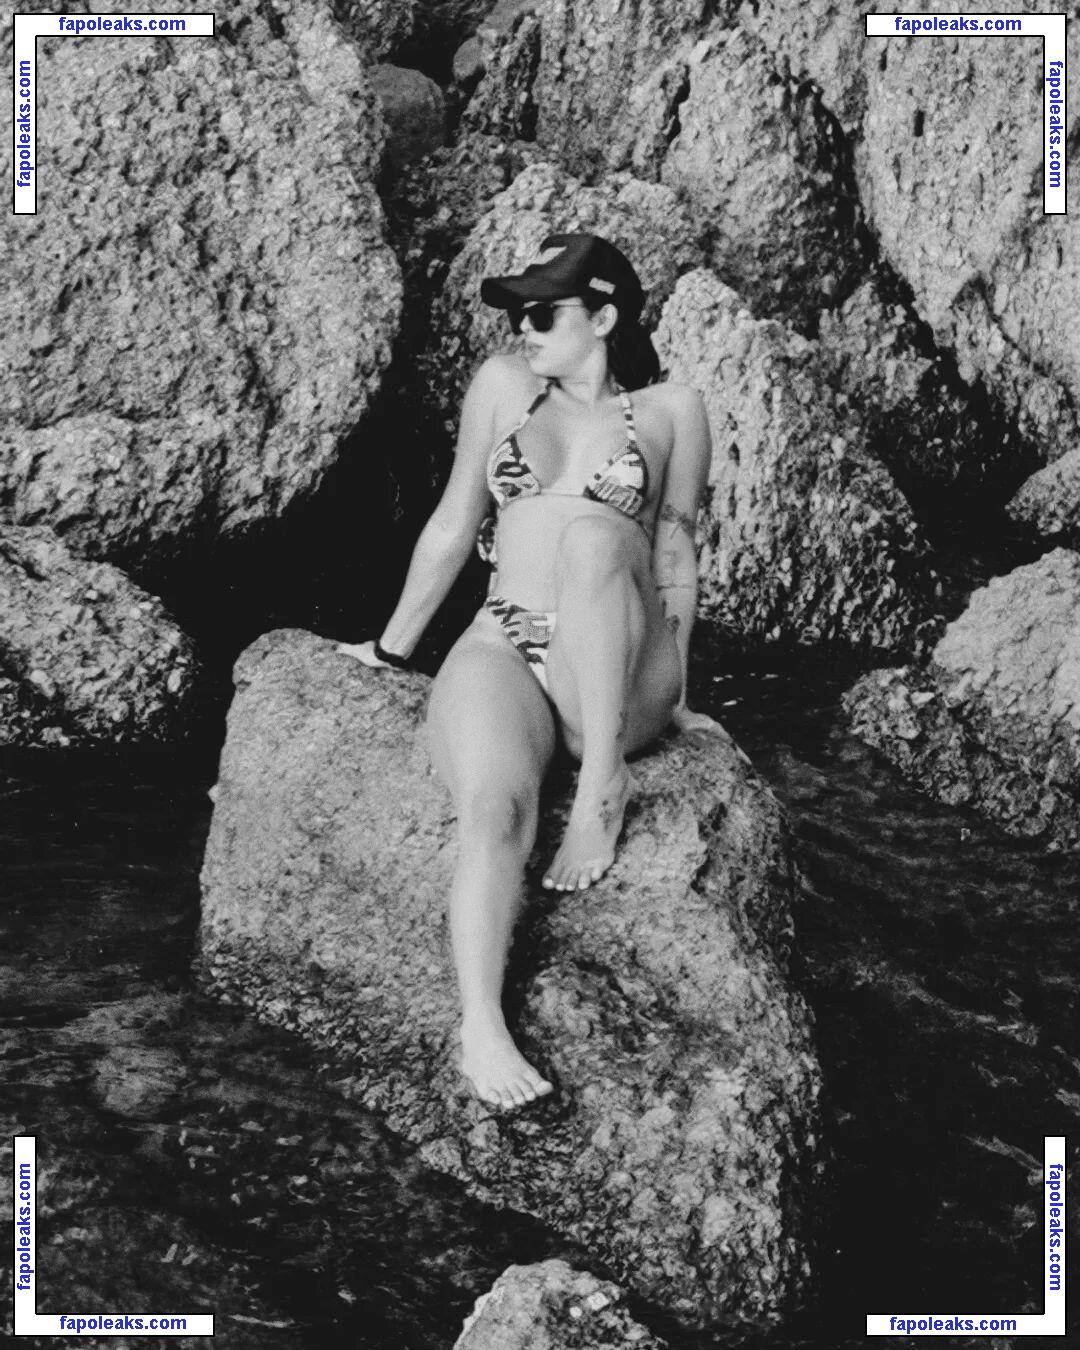 Juju Bellini / juju.bellinii nude photo #0042 from OnlyFans